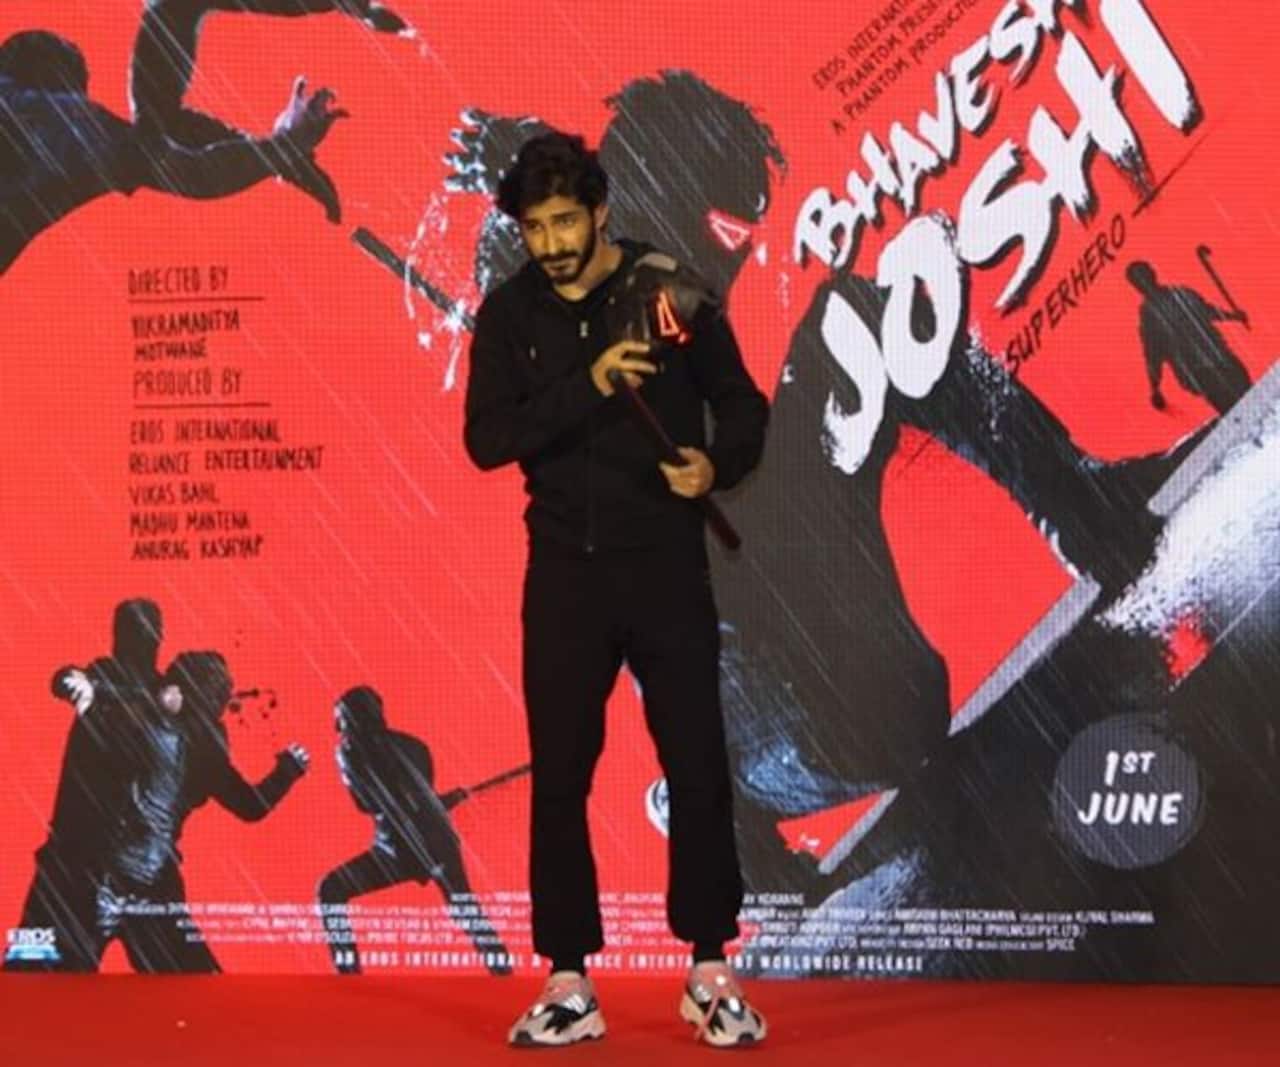 हर्षवर्धन कपूर ने भावेश जोशी बन कर मॉल में दिखाया लाइव एक्शन, 1 जून को रिलीज हो रही है फिल्म